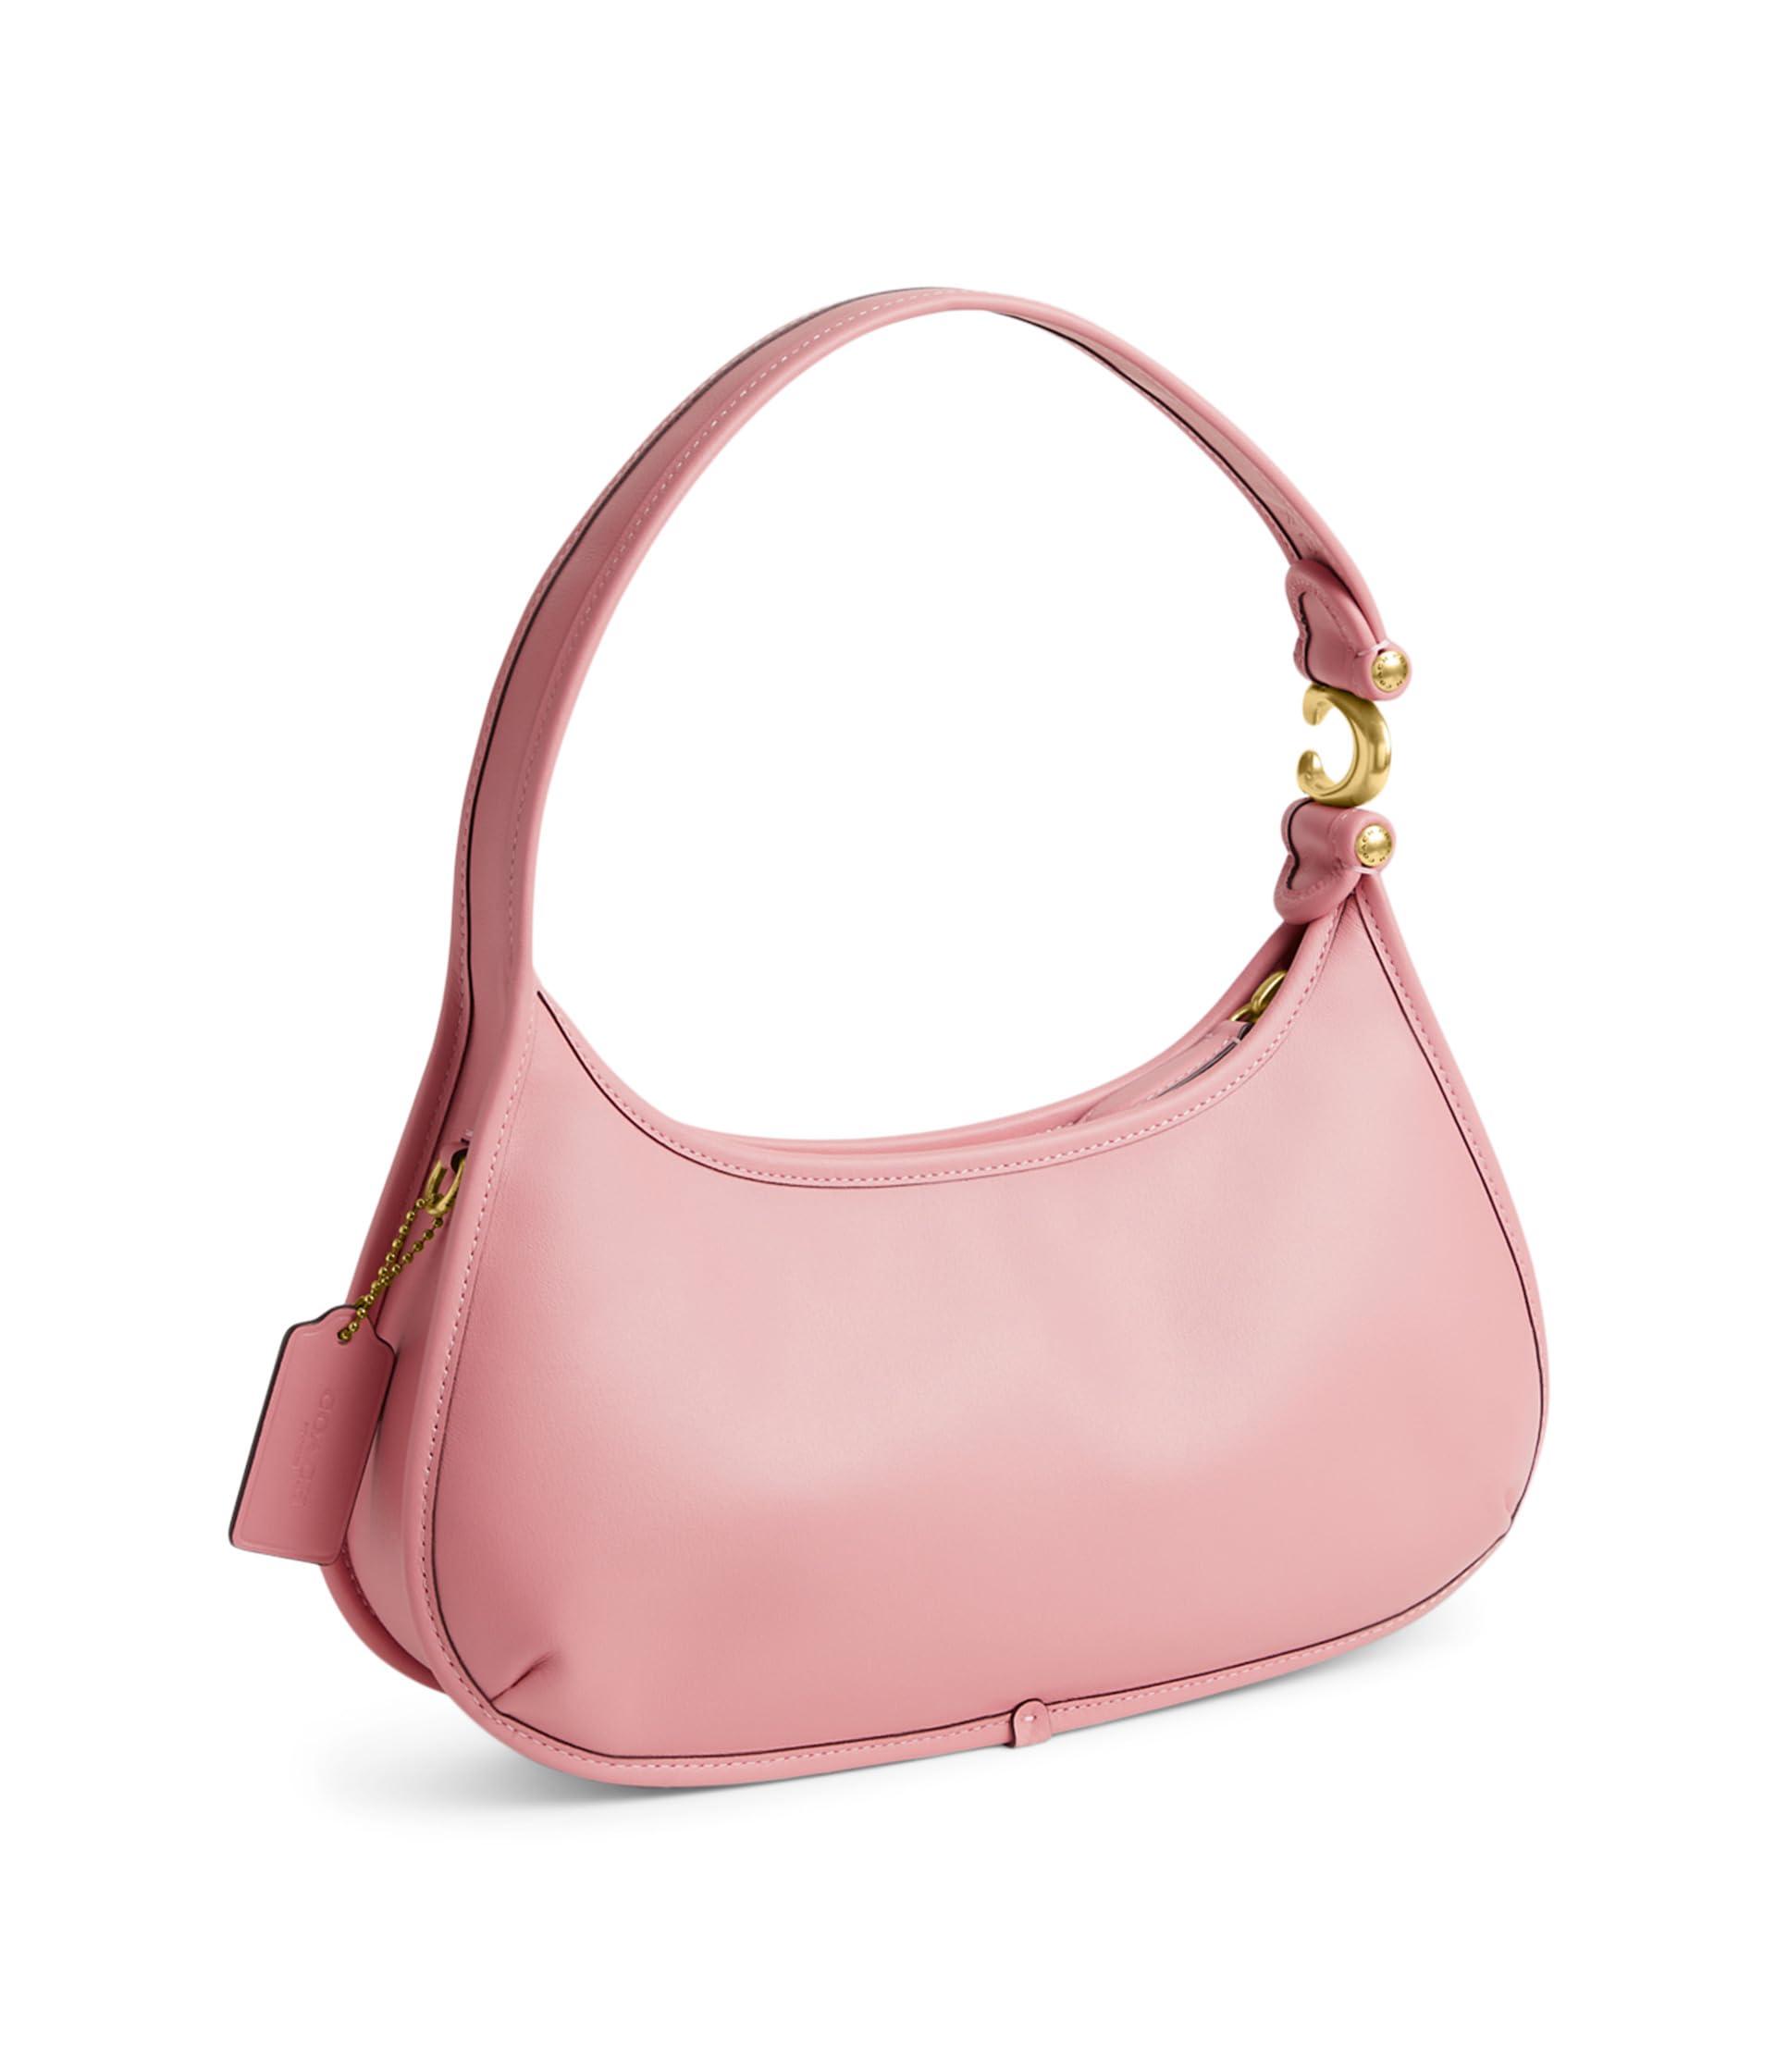 COACH Glovetanned Leather Eve Shoulder Bag in Pink